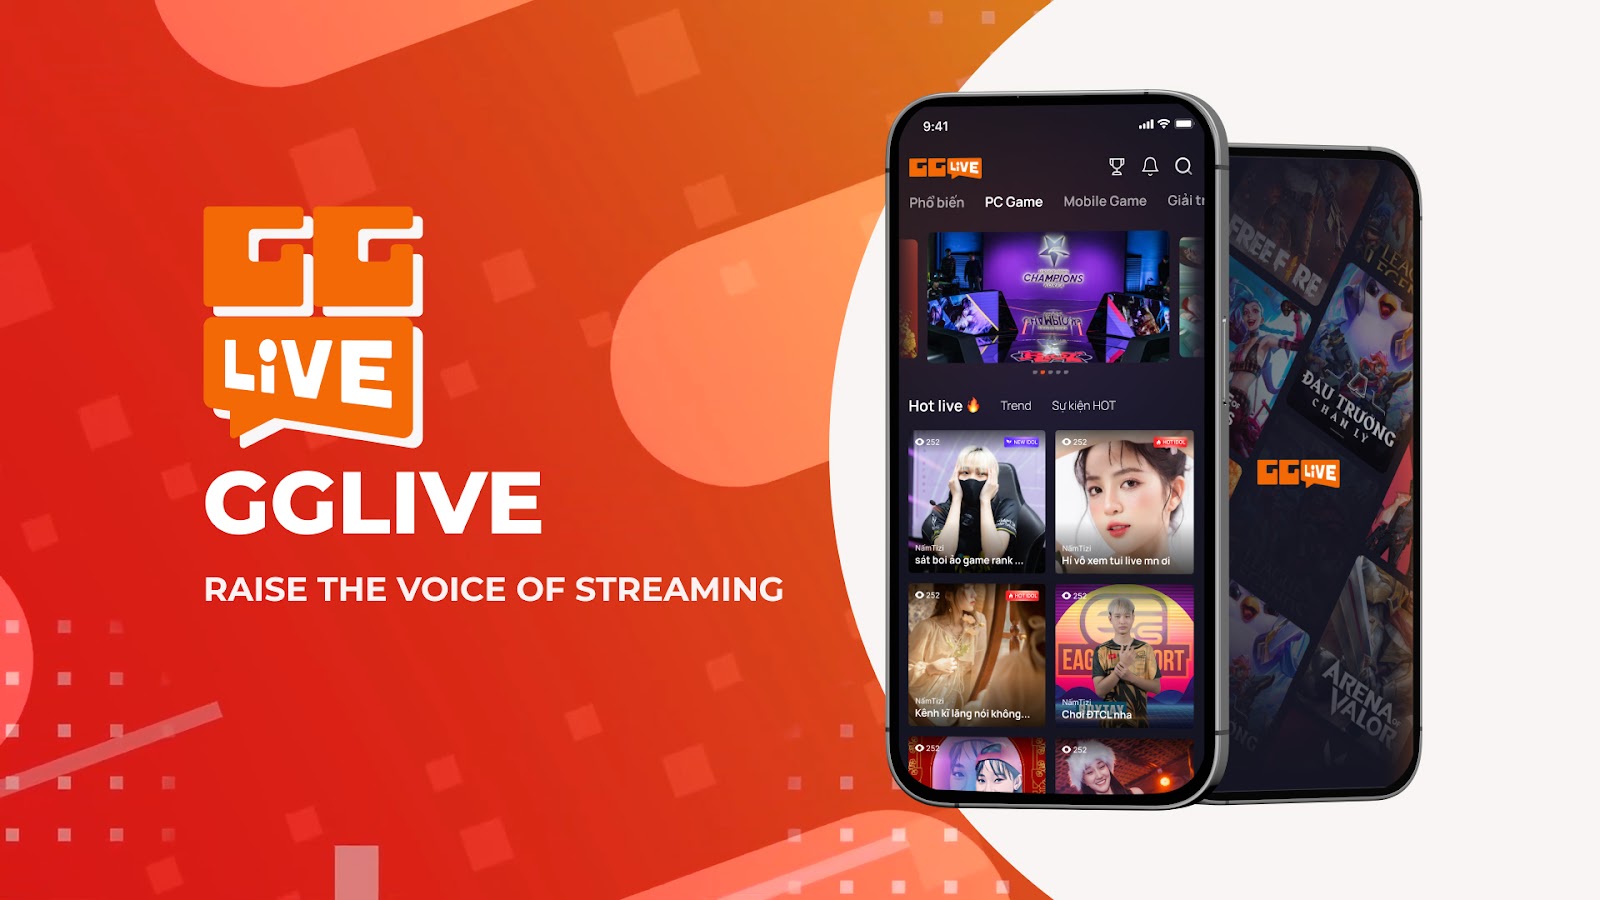 Cùng GG Live lắng nghe tiếng nói cộng đồng streaming và nỗ lực mang tới sự ổn định cho các streamer trẻ 3